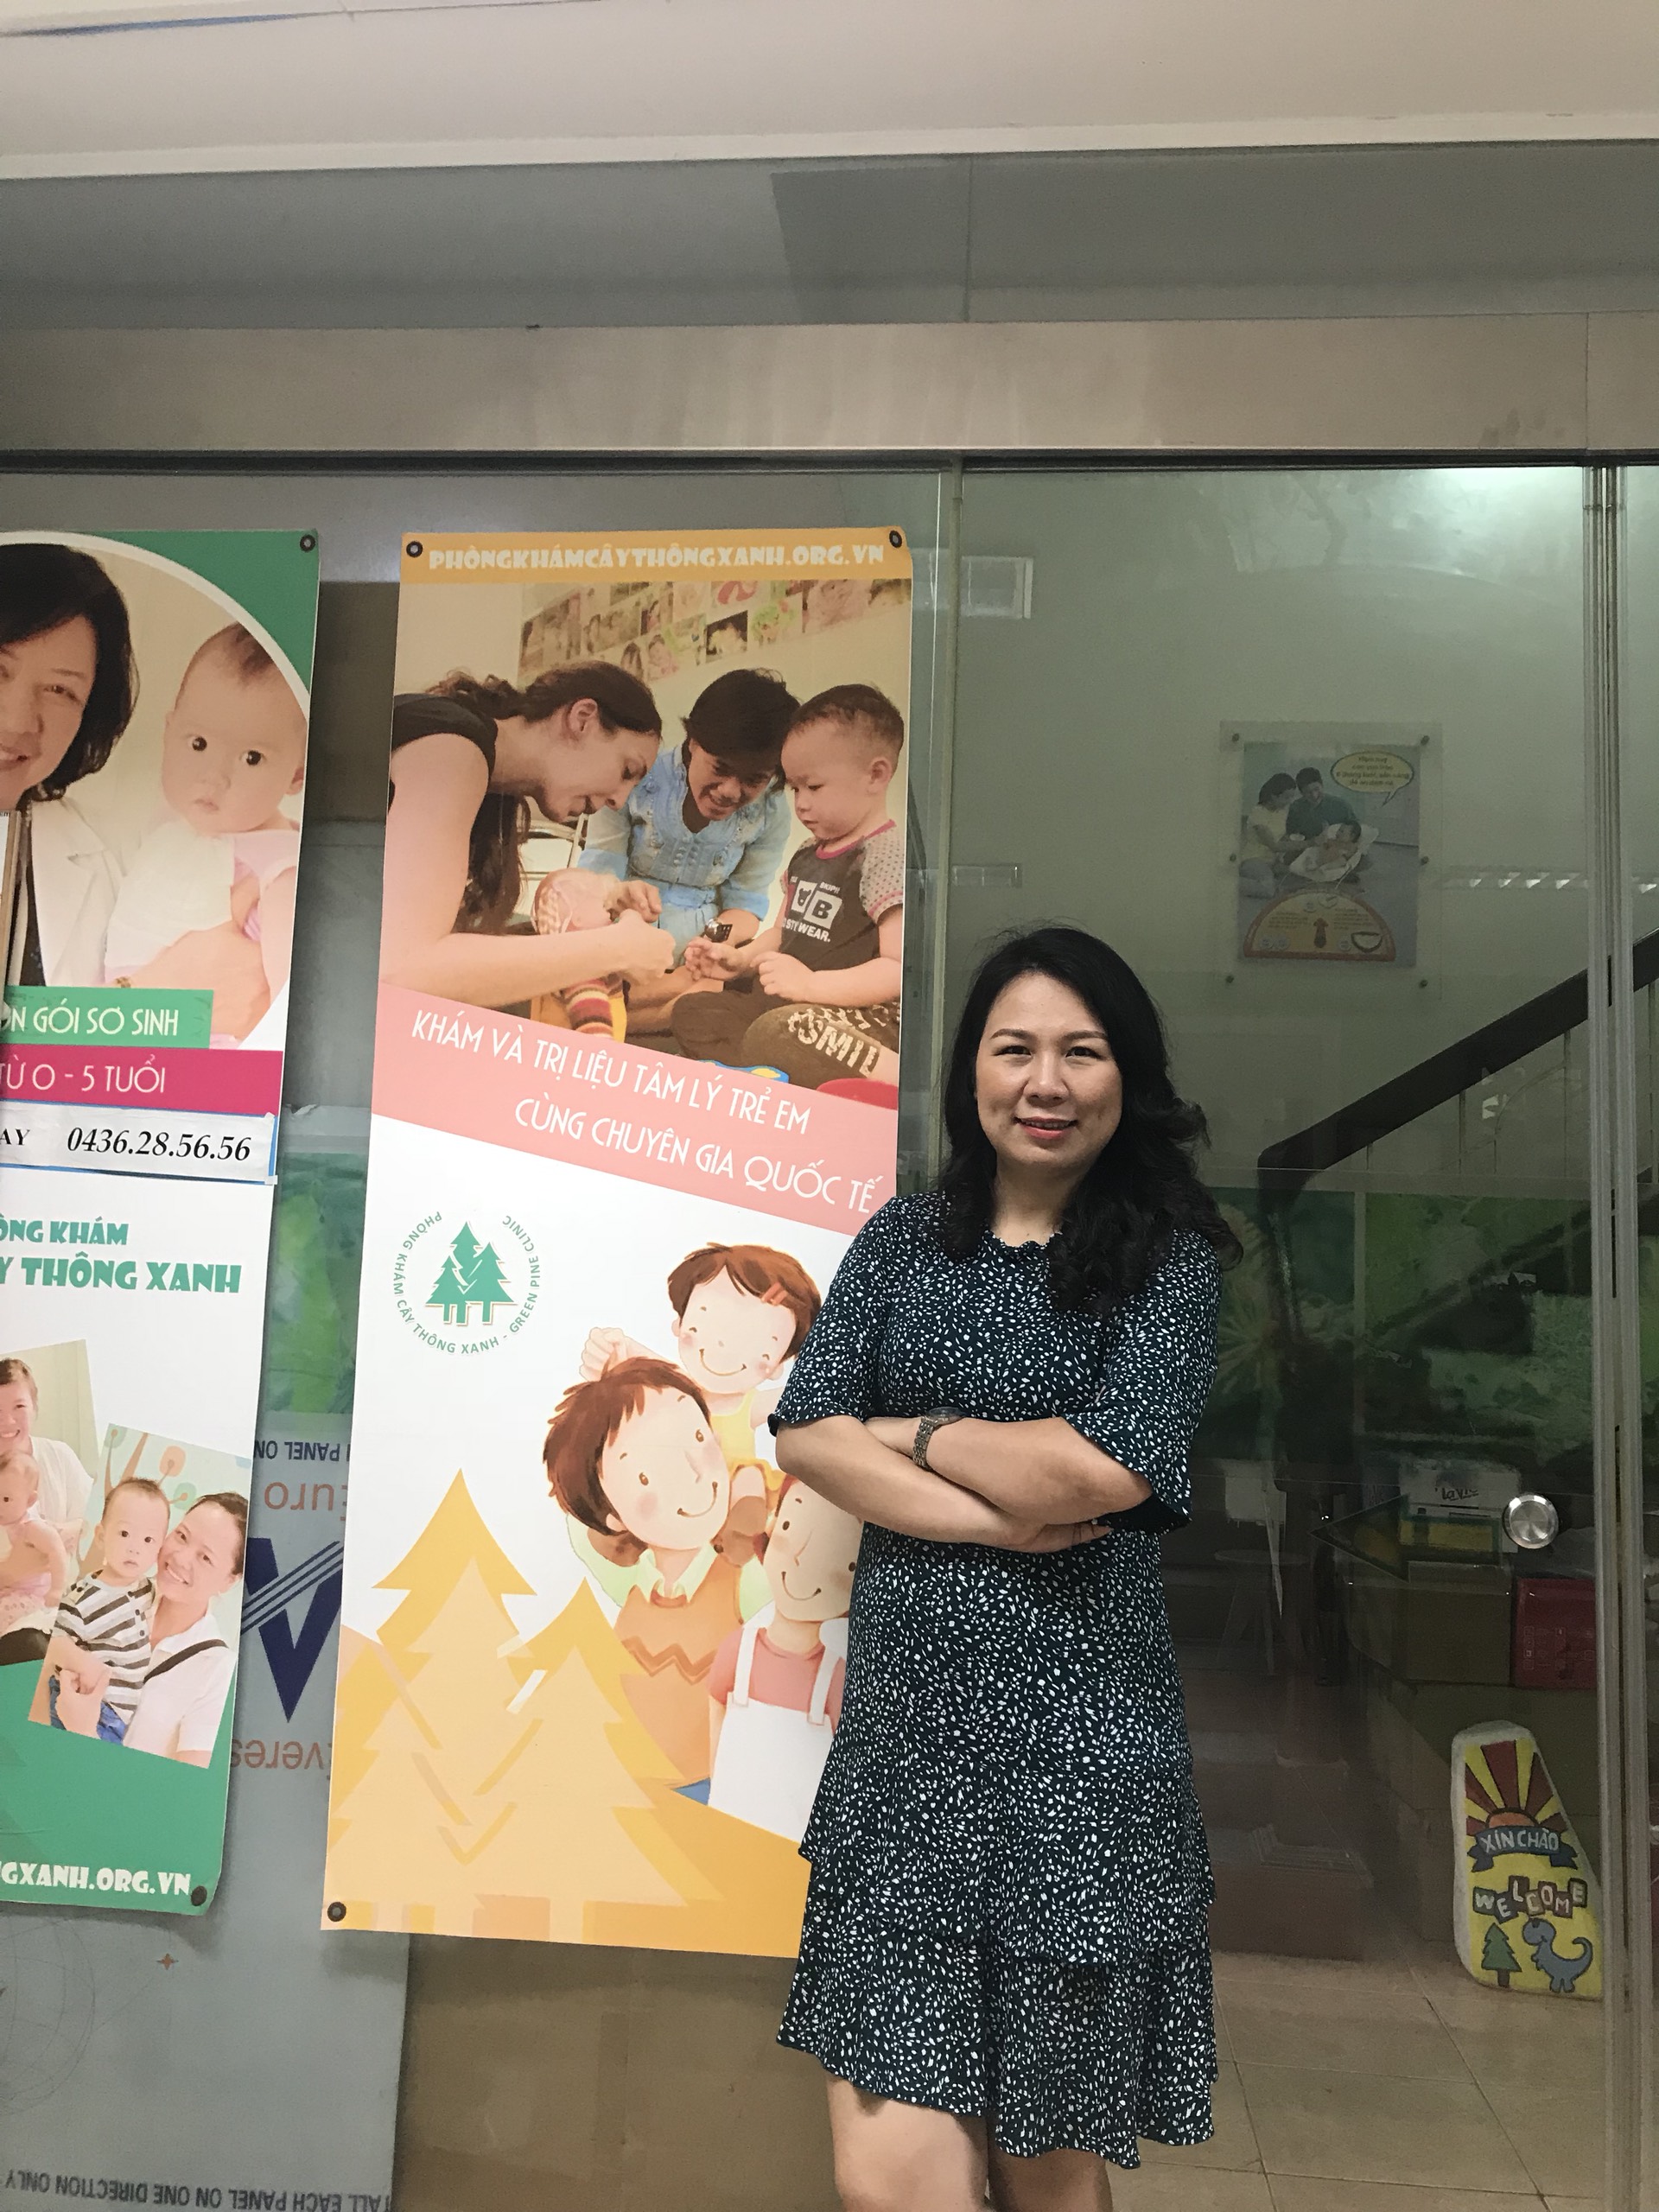 Phòng Khám Cây thông xanh:muốn truyền kinh nghiệm hay cho các bậc cha mẹ trong việc chăm sóc sức khỏe, tạo tính tự lập và kỹ năng sống cho con cái (17/6/2019)